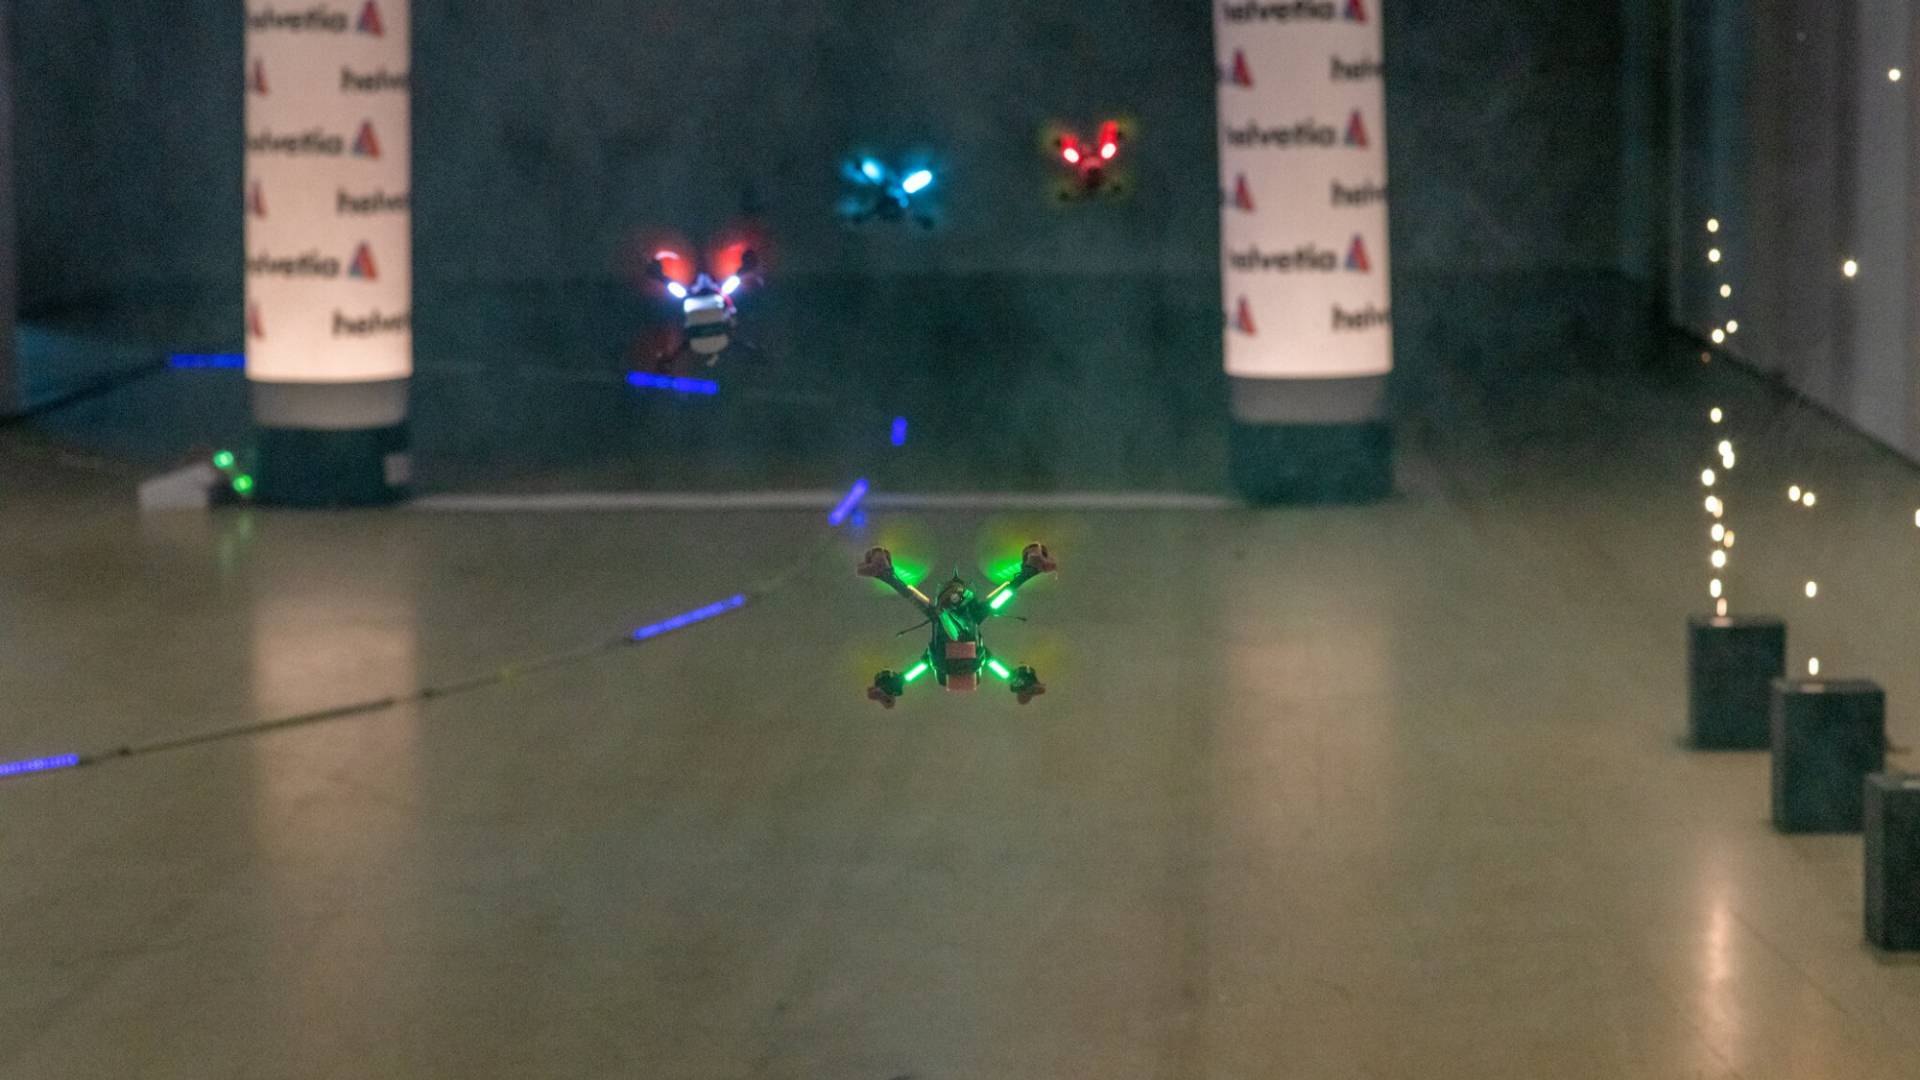 I droni volano superando gli ostacoli lungo il percorso di gara.